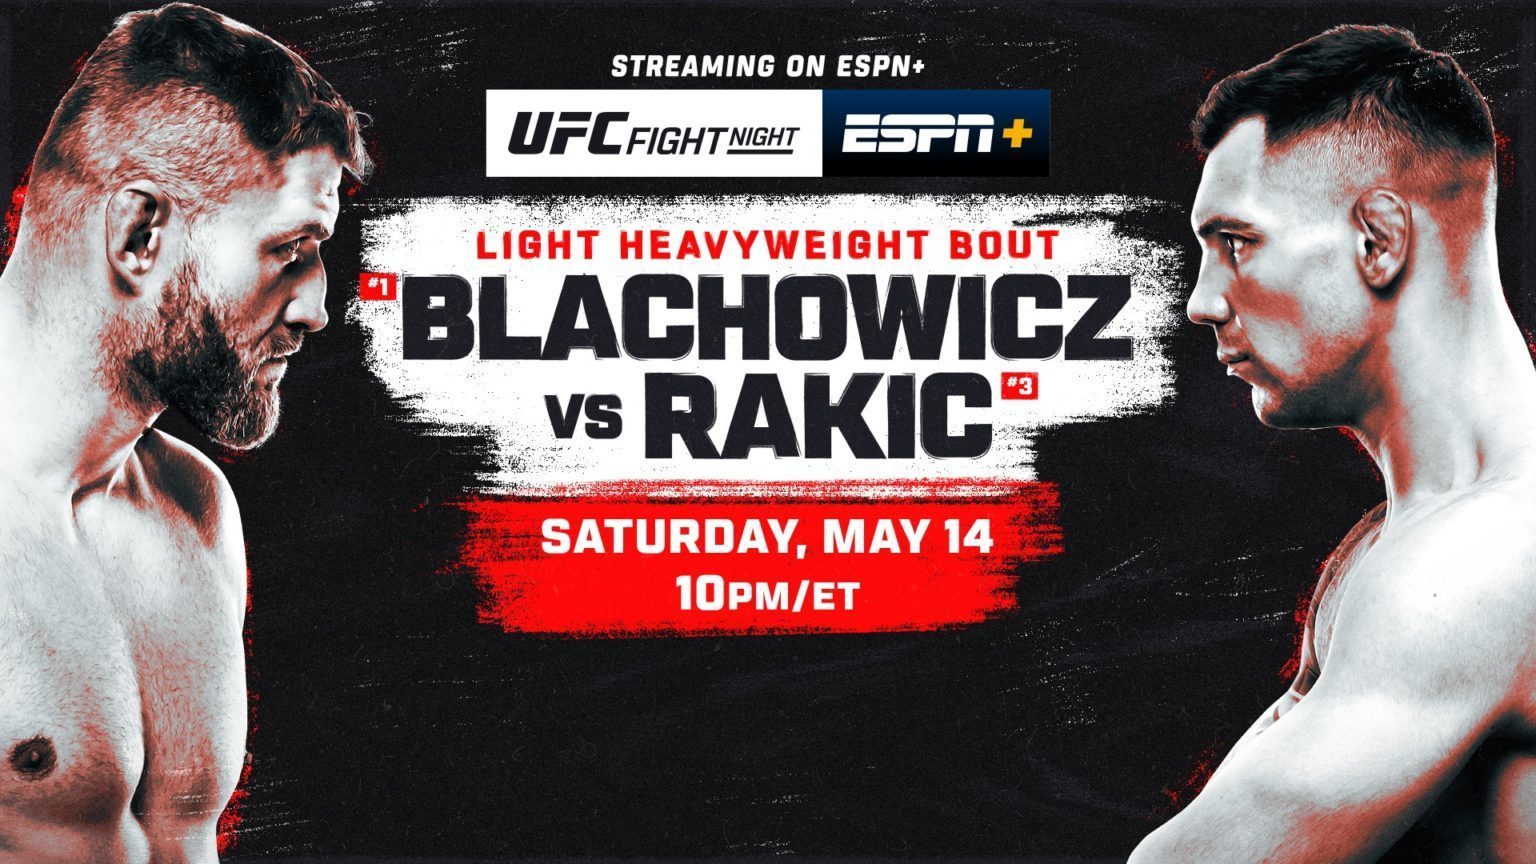 UFC Fight Night: Blachowicz vs. Rakic on Saturday, May 14